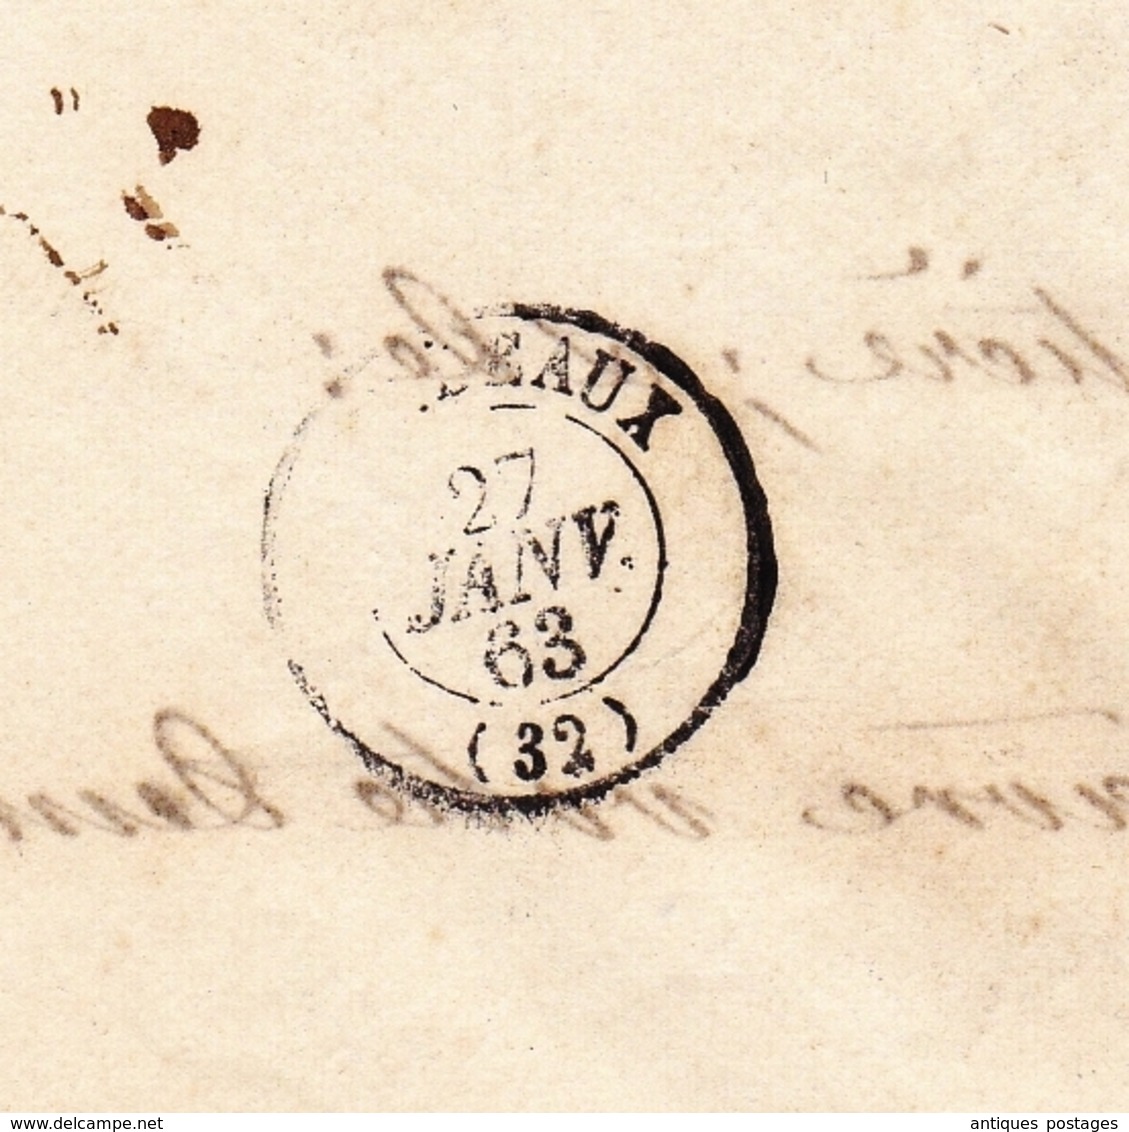 Lettre Paris 1863 Napoléon III 20 centimes Bordeaux Gironde Mines et Fonderies de Zinc de la Vieille Montagne